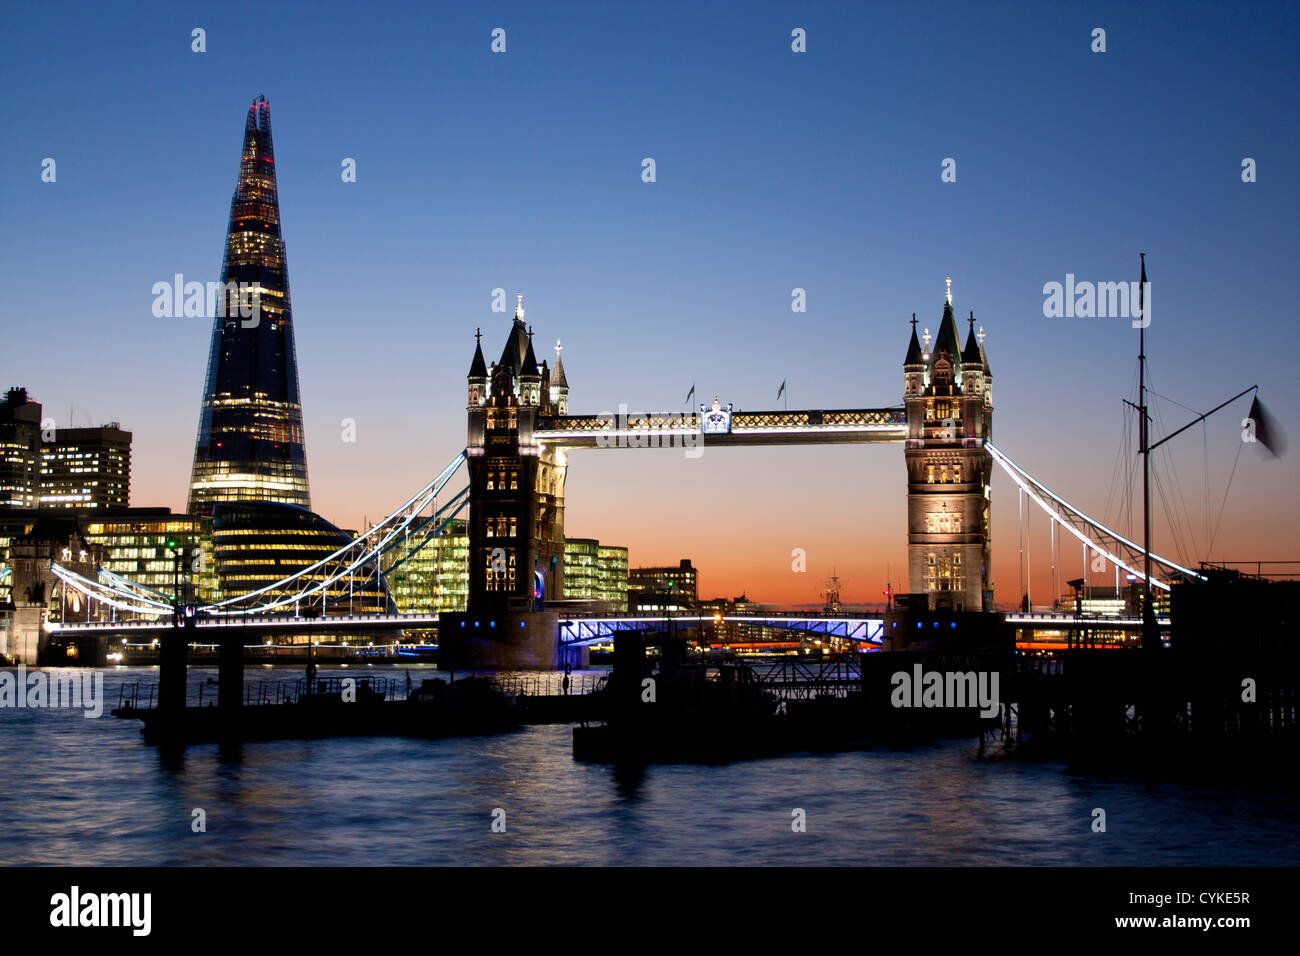 Skyline von New London Tower Bridge und Renzo Piano Wolkenkratzer The Shard of Glass bei Dämmerung / Nacht London England UK Stockfoto